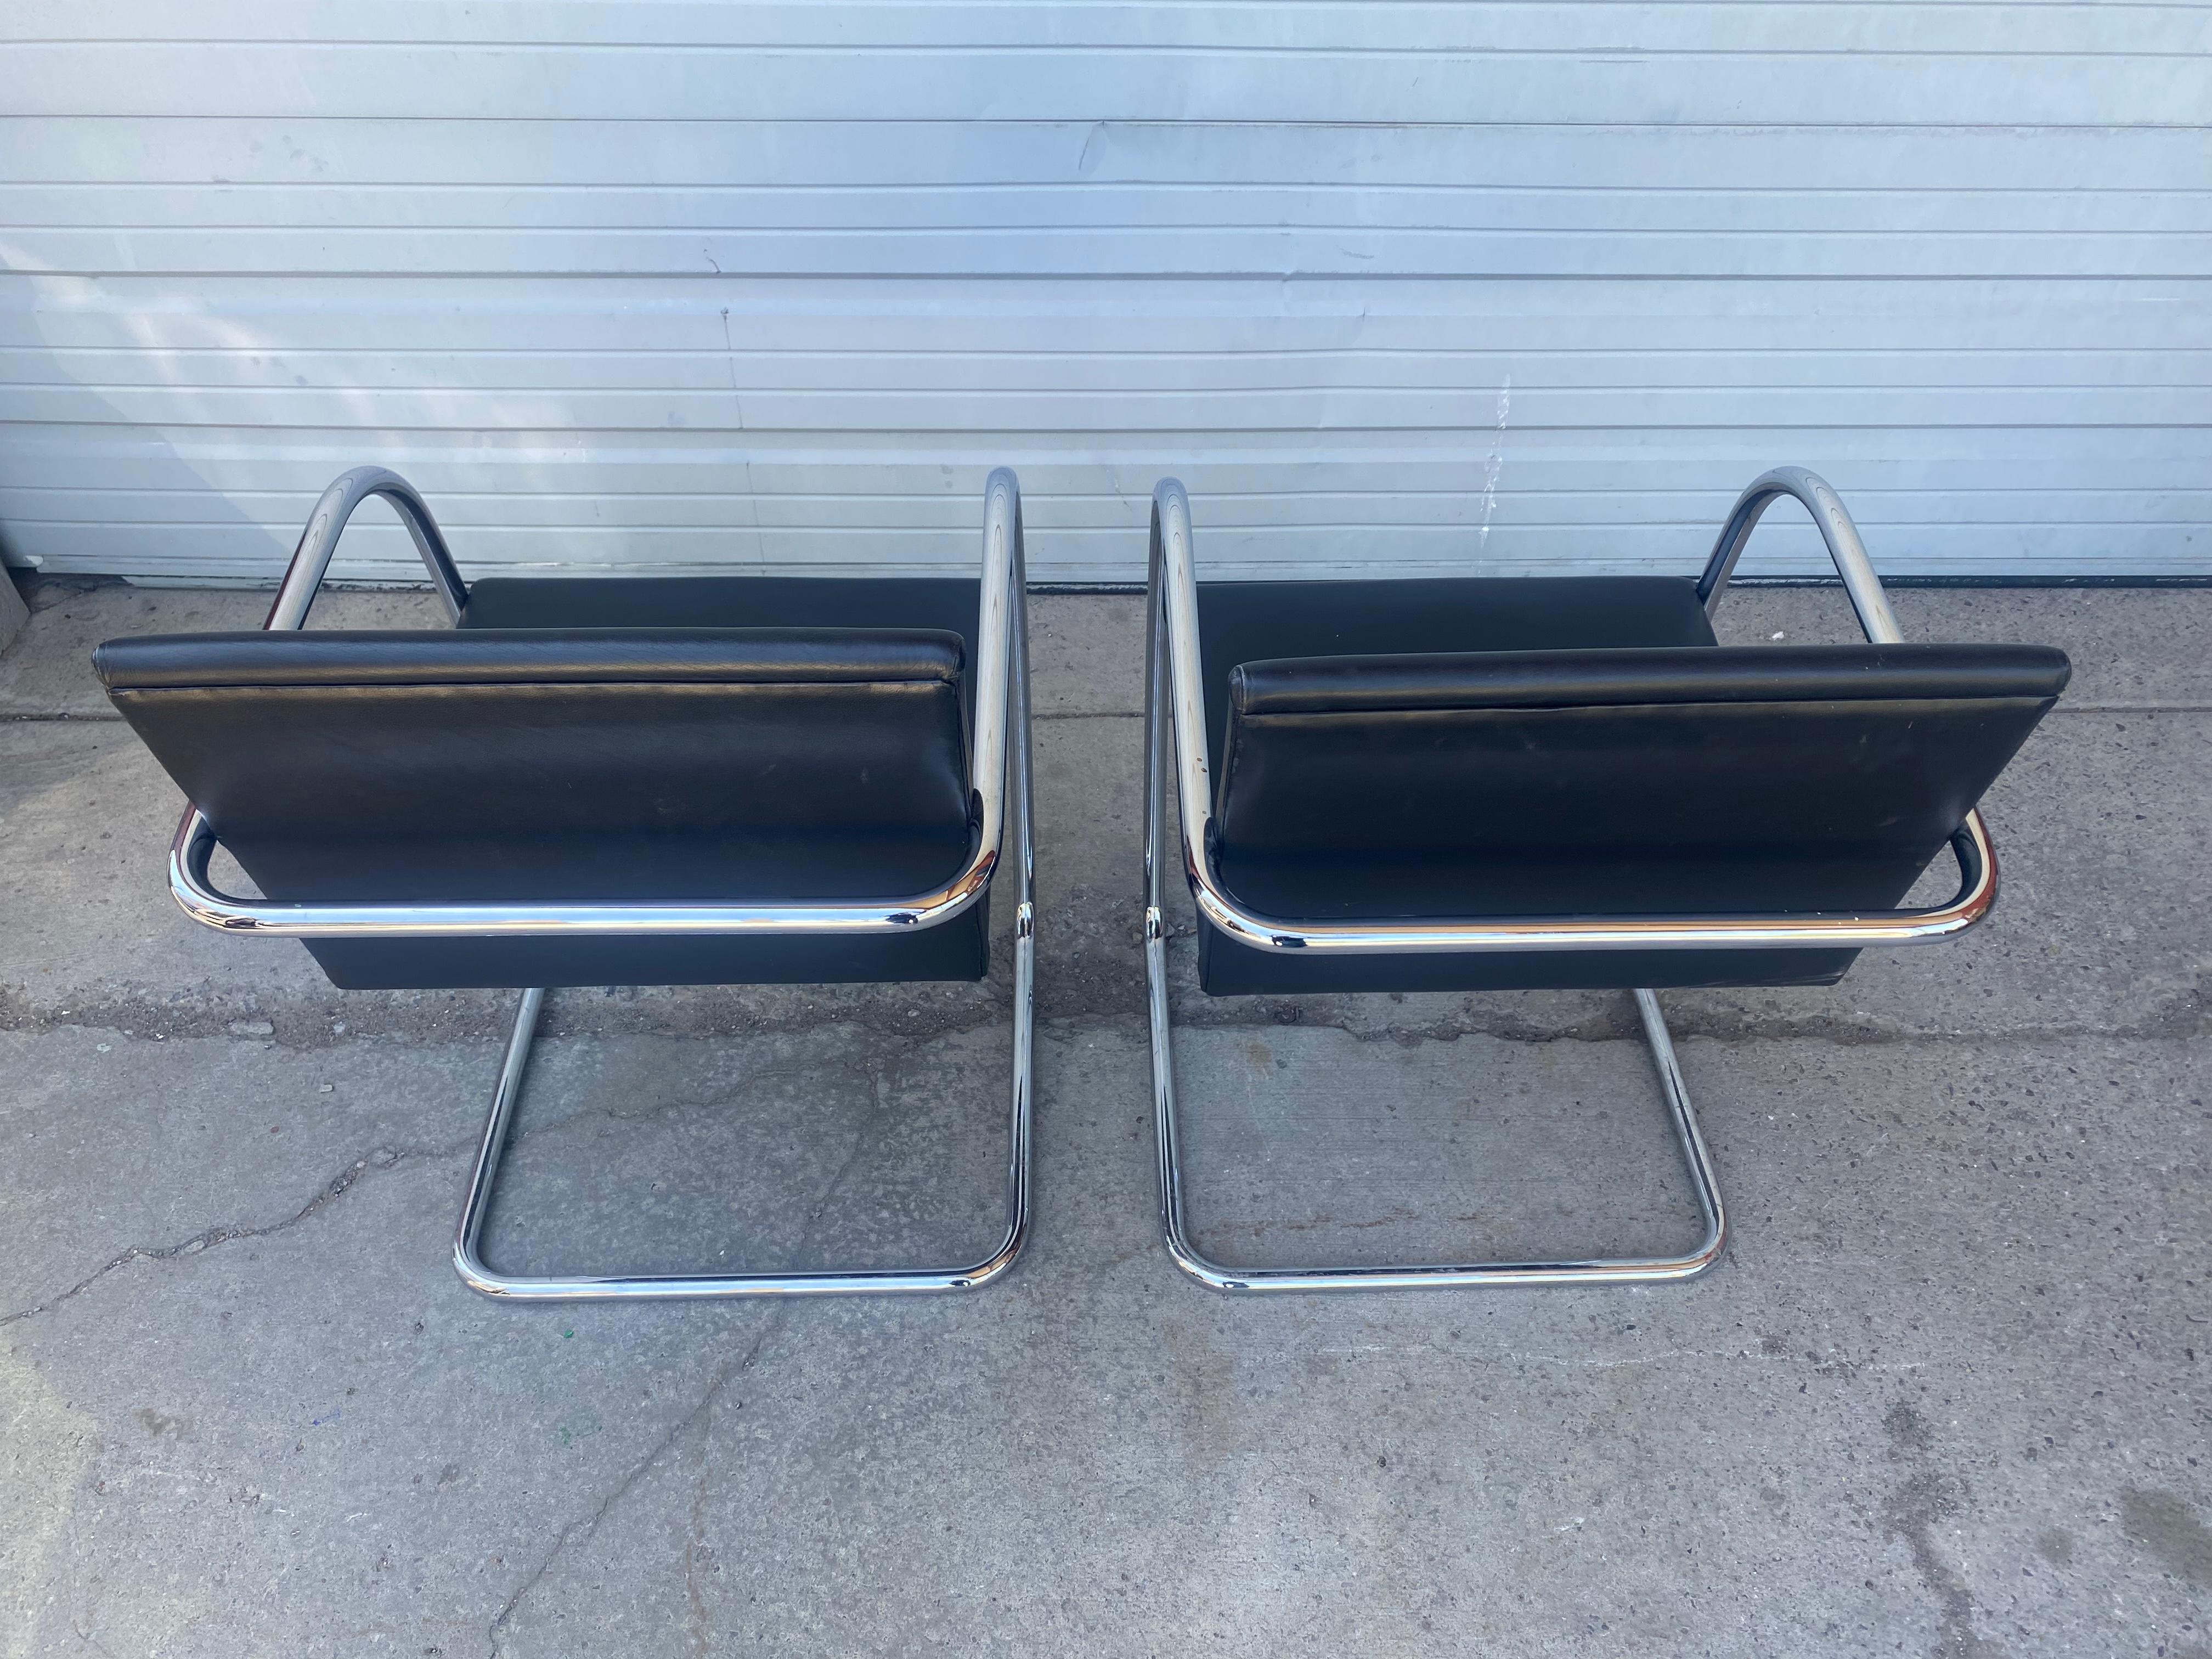 
Klassisches Set von 6 Brünner Stühlen von Knoll Studios,, Wunderschönes schwarzes Leder und poliertes Chrom...Extrem bequem,,, Behalten Sie originale Knoll-Etiketten sowie eingeprägte Marke auf Stahl (unter den Armlehnen) Handlieferung nach New